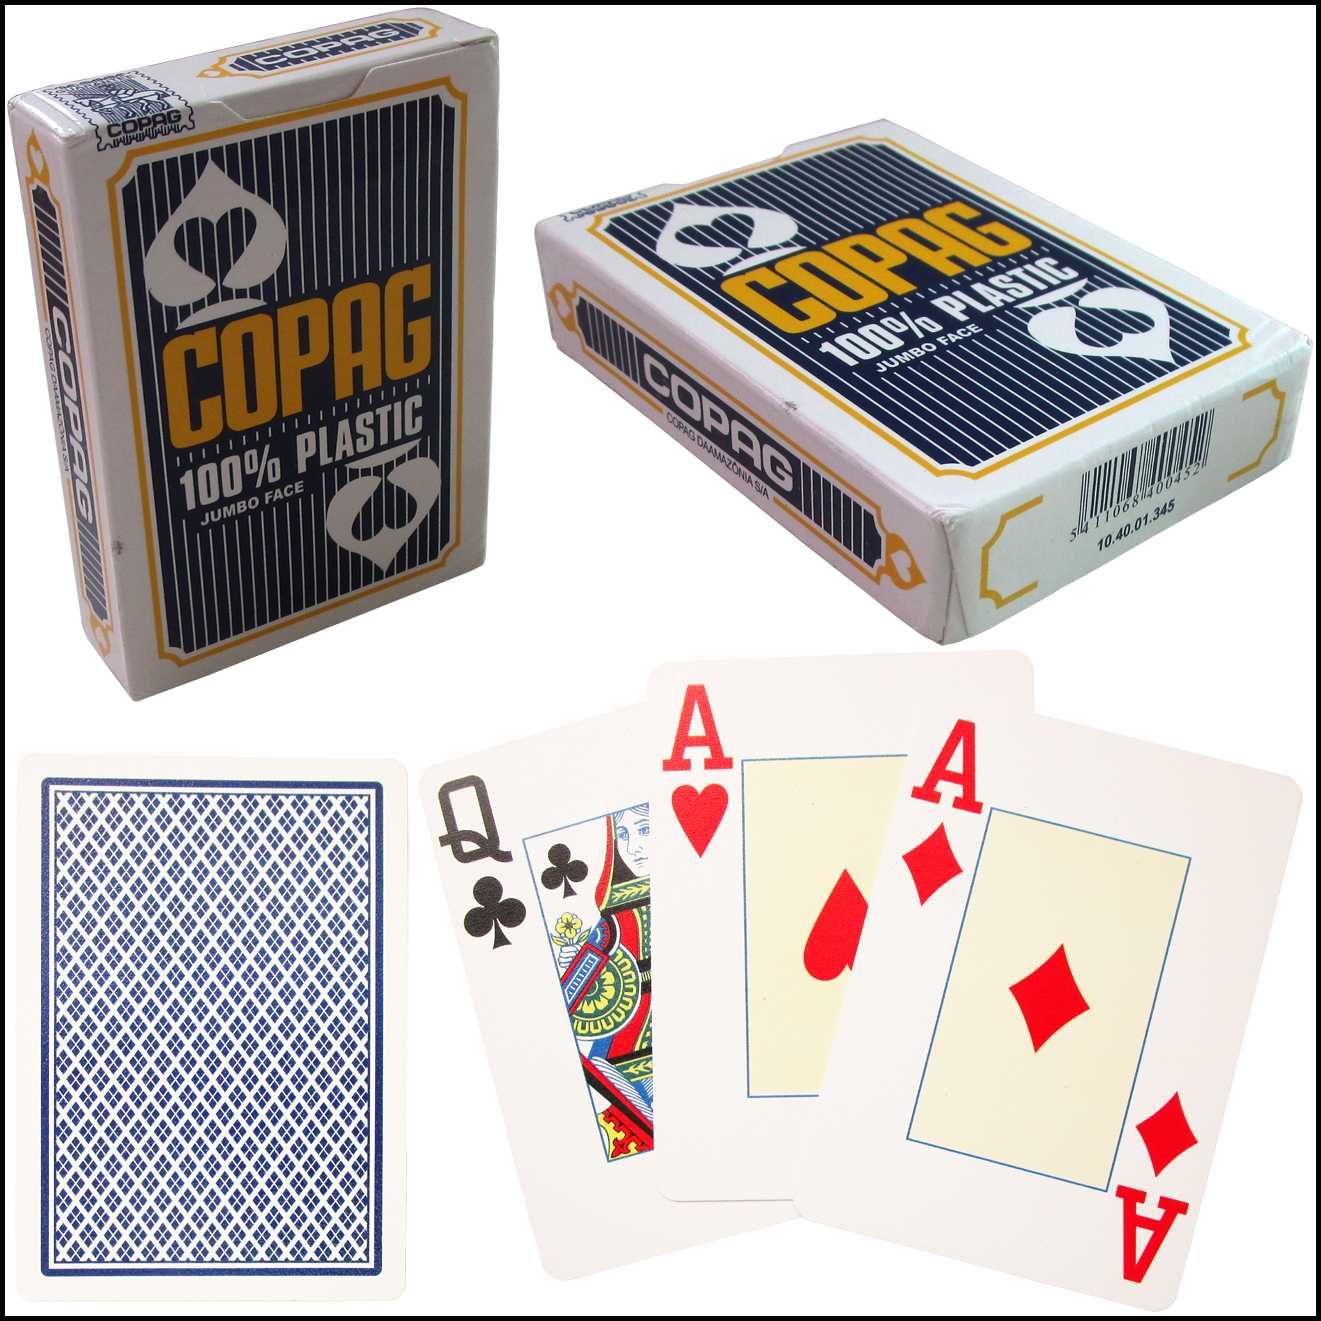 Пластиковые карты, покерные карты, COPAG, ази. COPAG